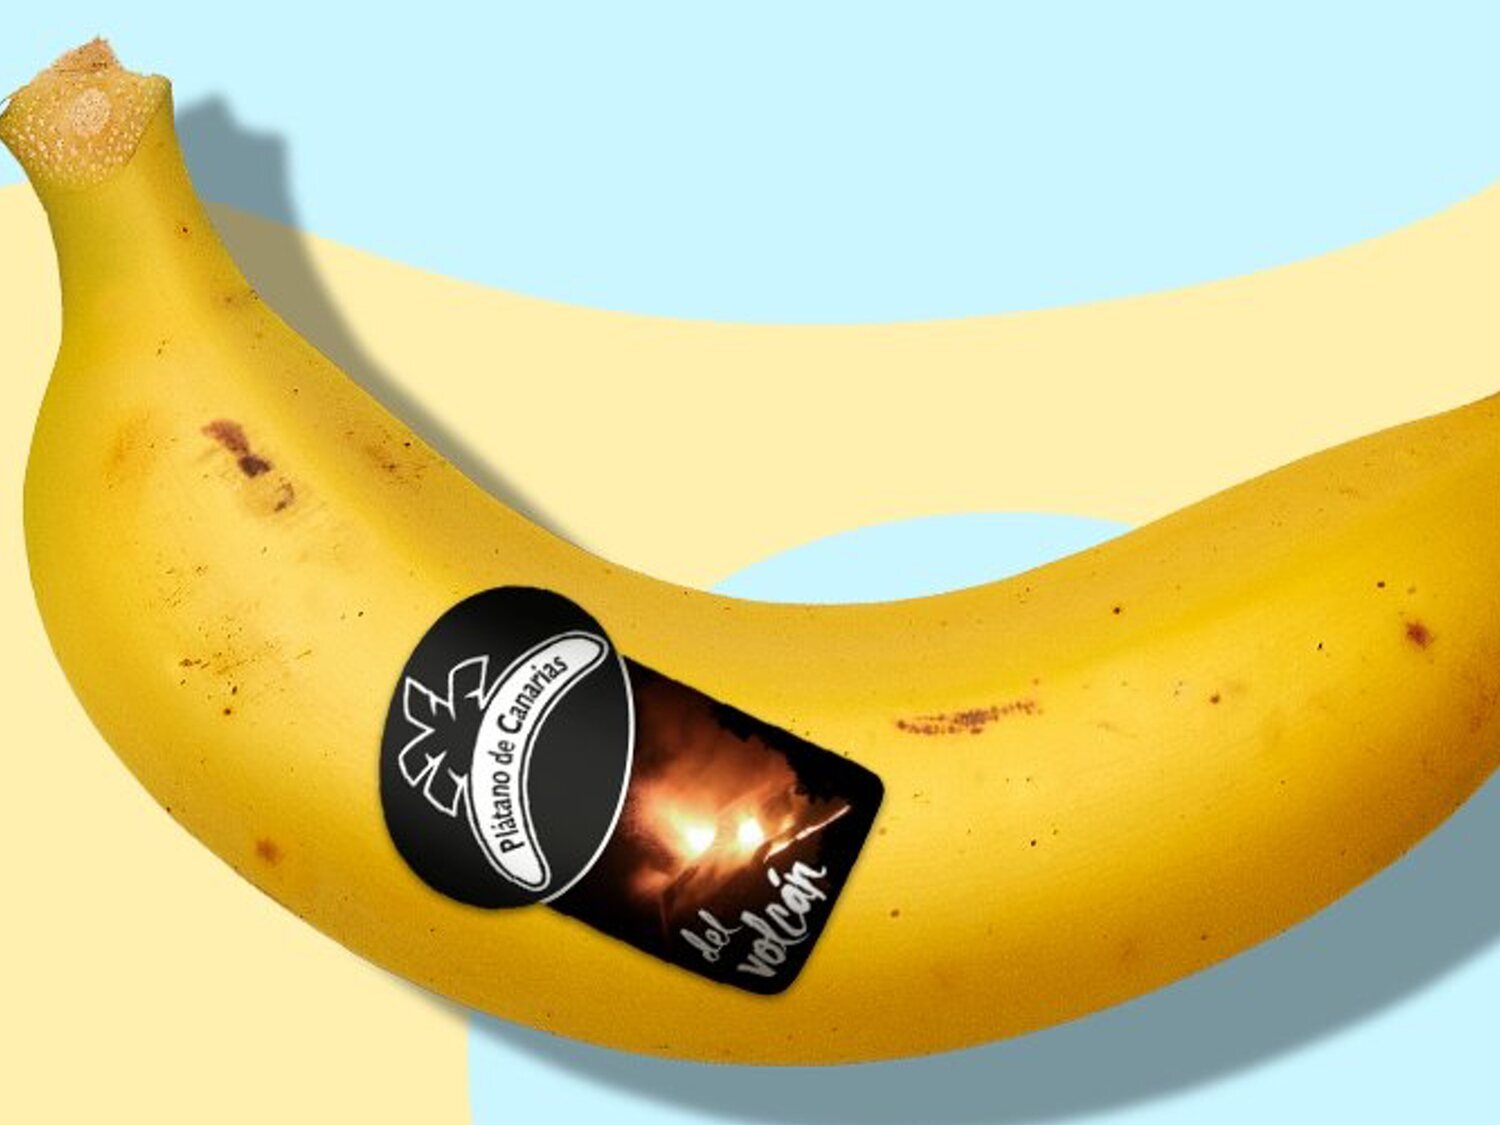 'Del volcán': El sello de los plátanos de Canarias producidos en zonas afectadas de La Palma